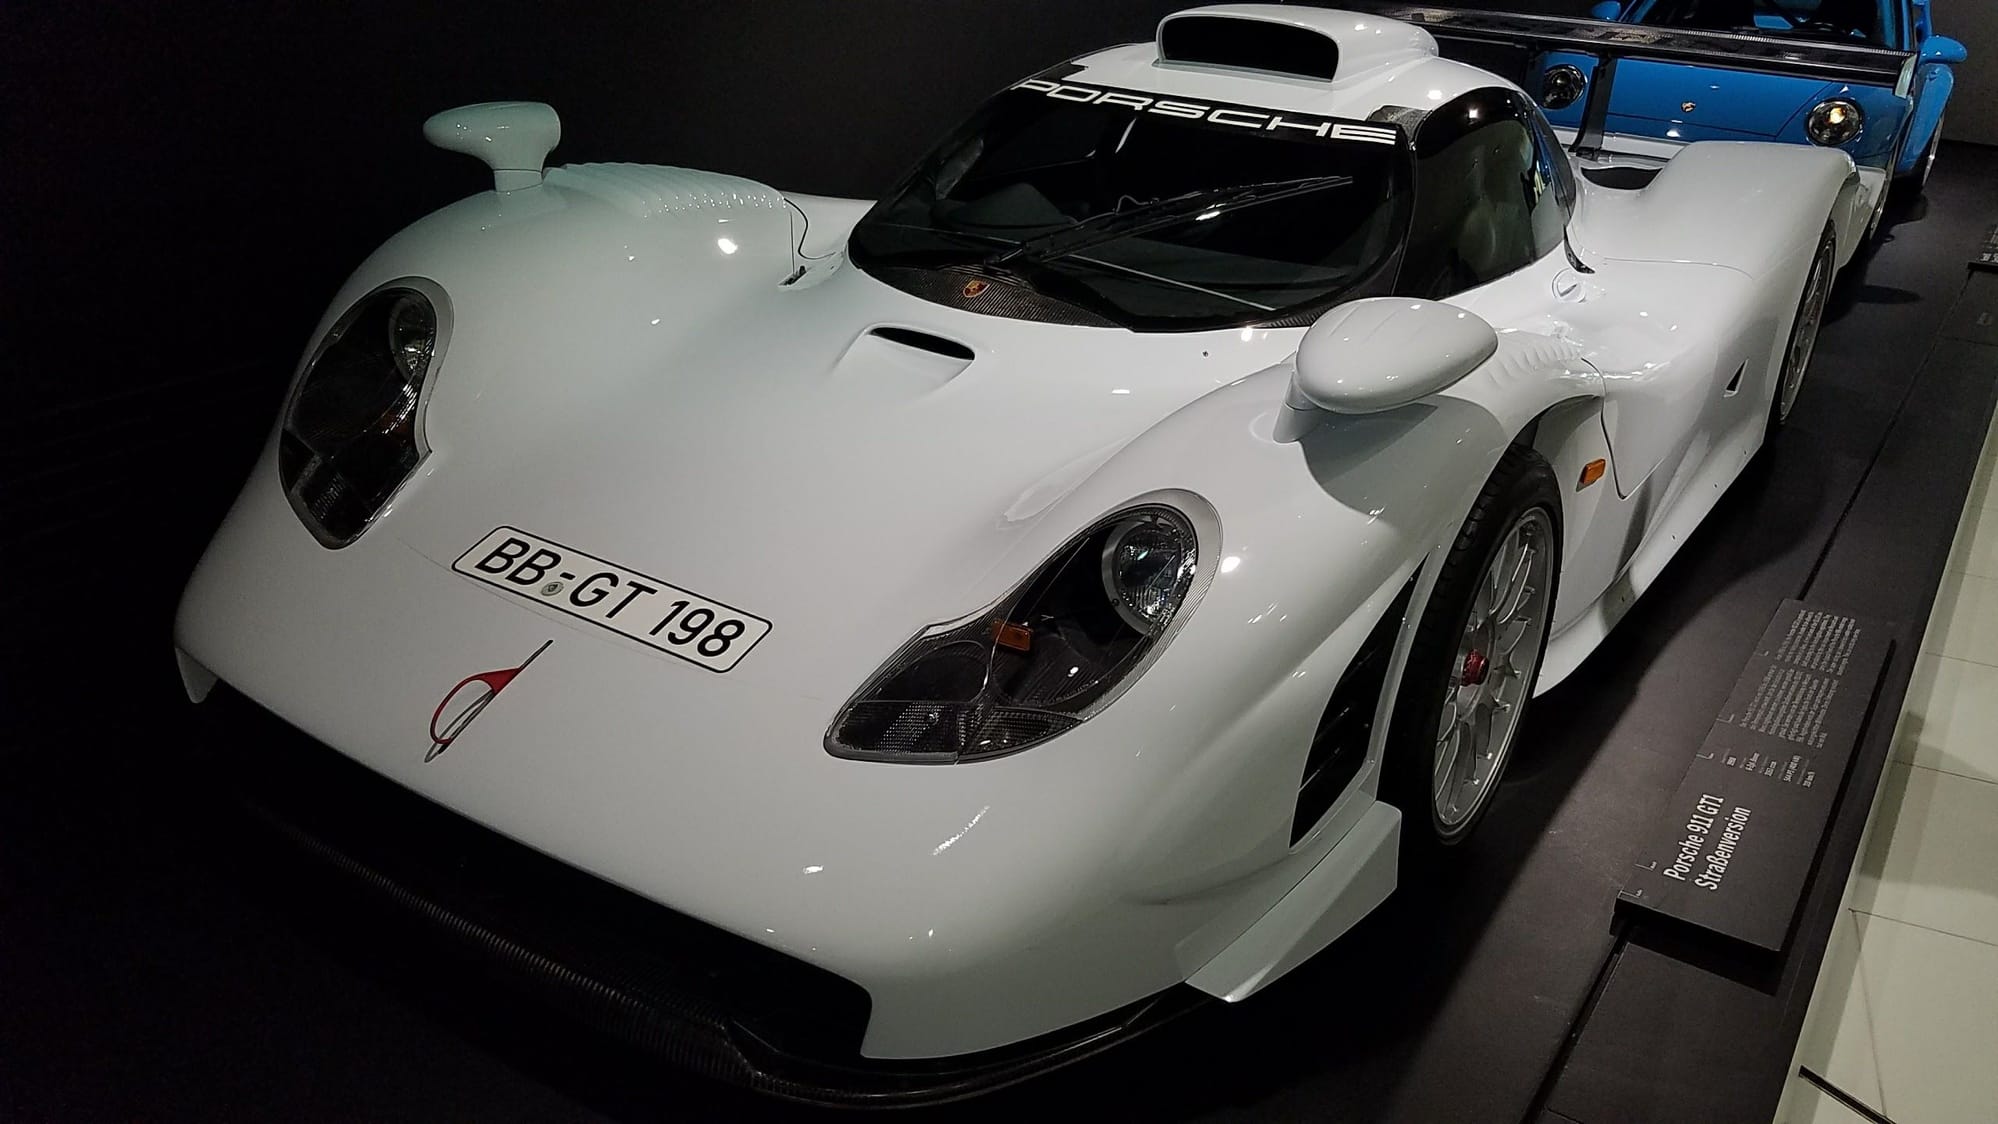 02 Headlights On A 99 Rennlist Porsche Discussion Forums